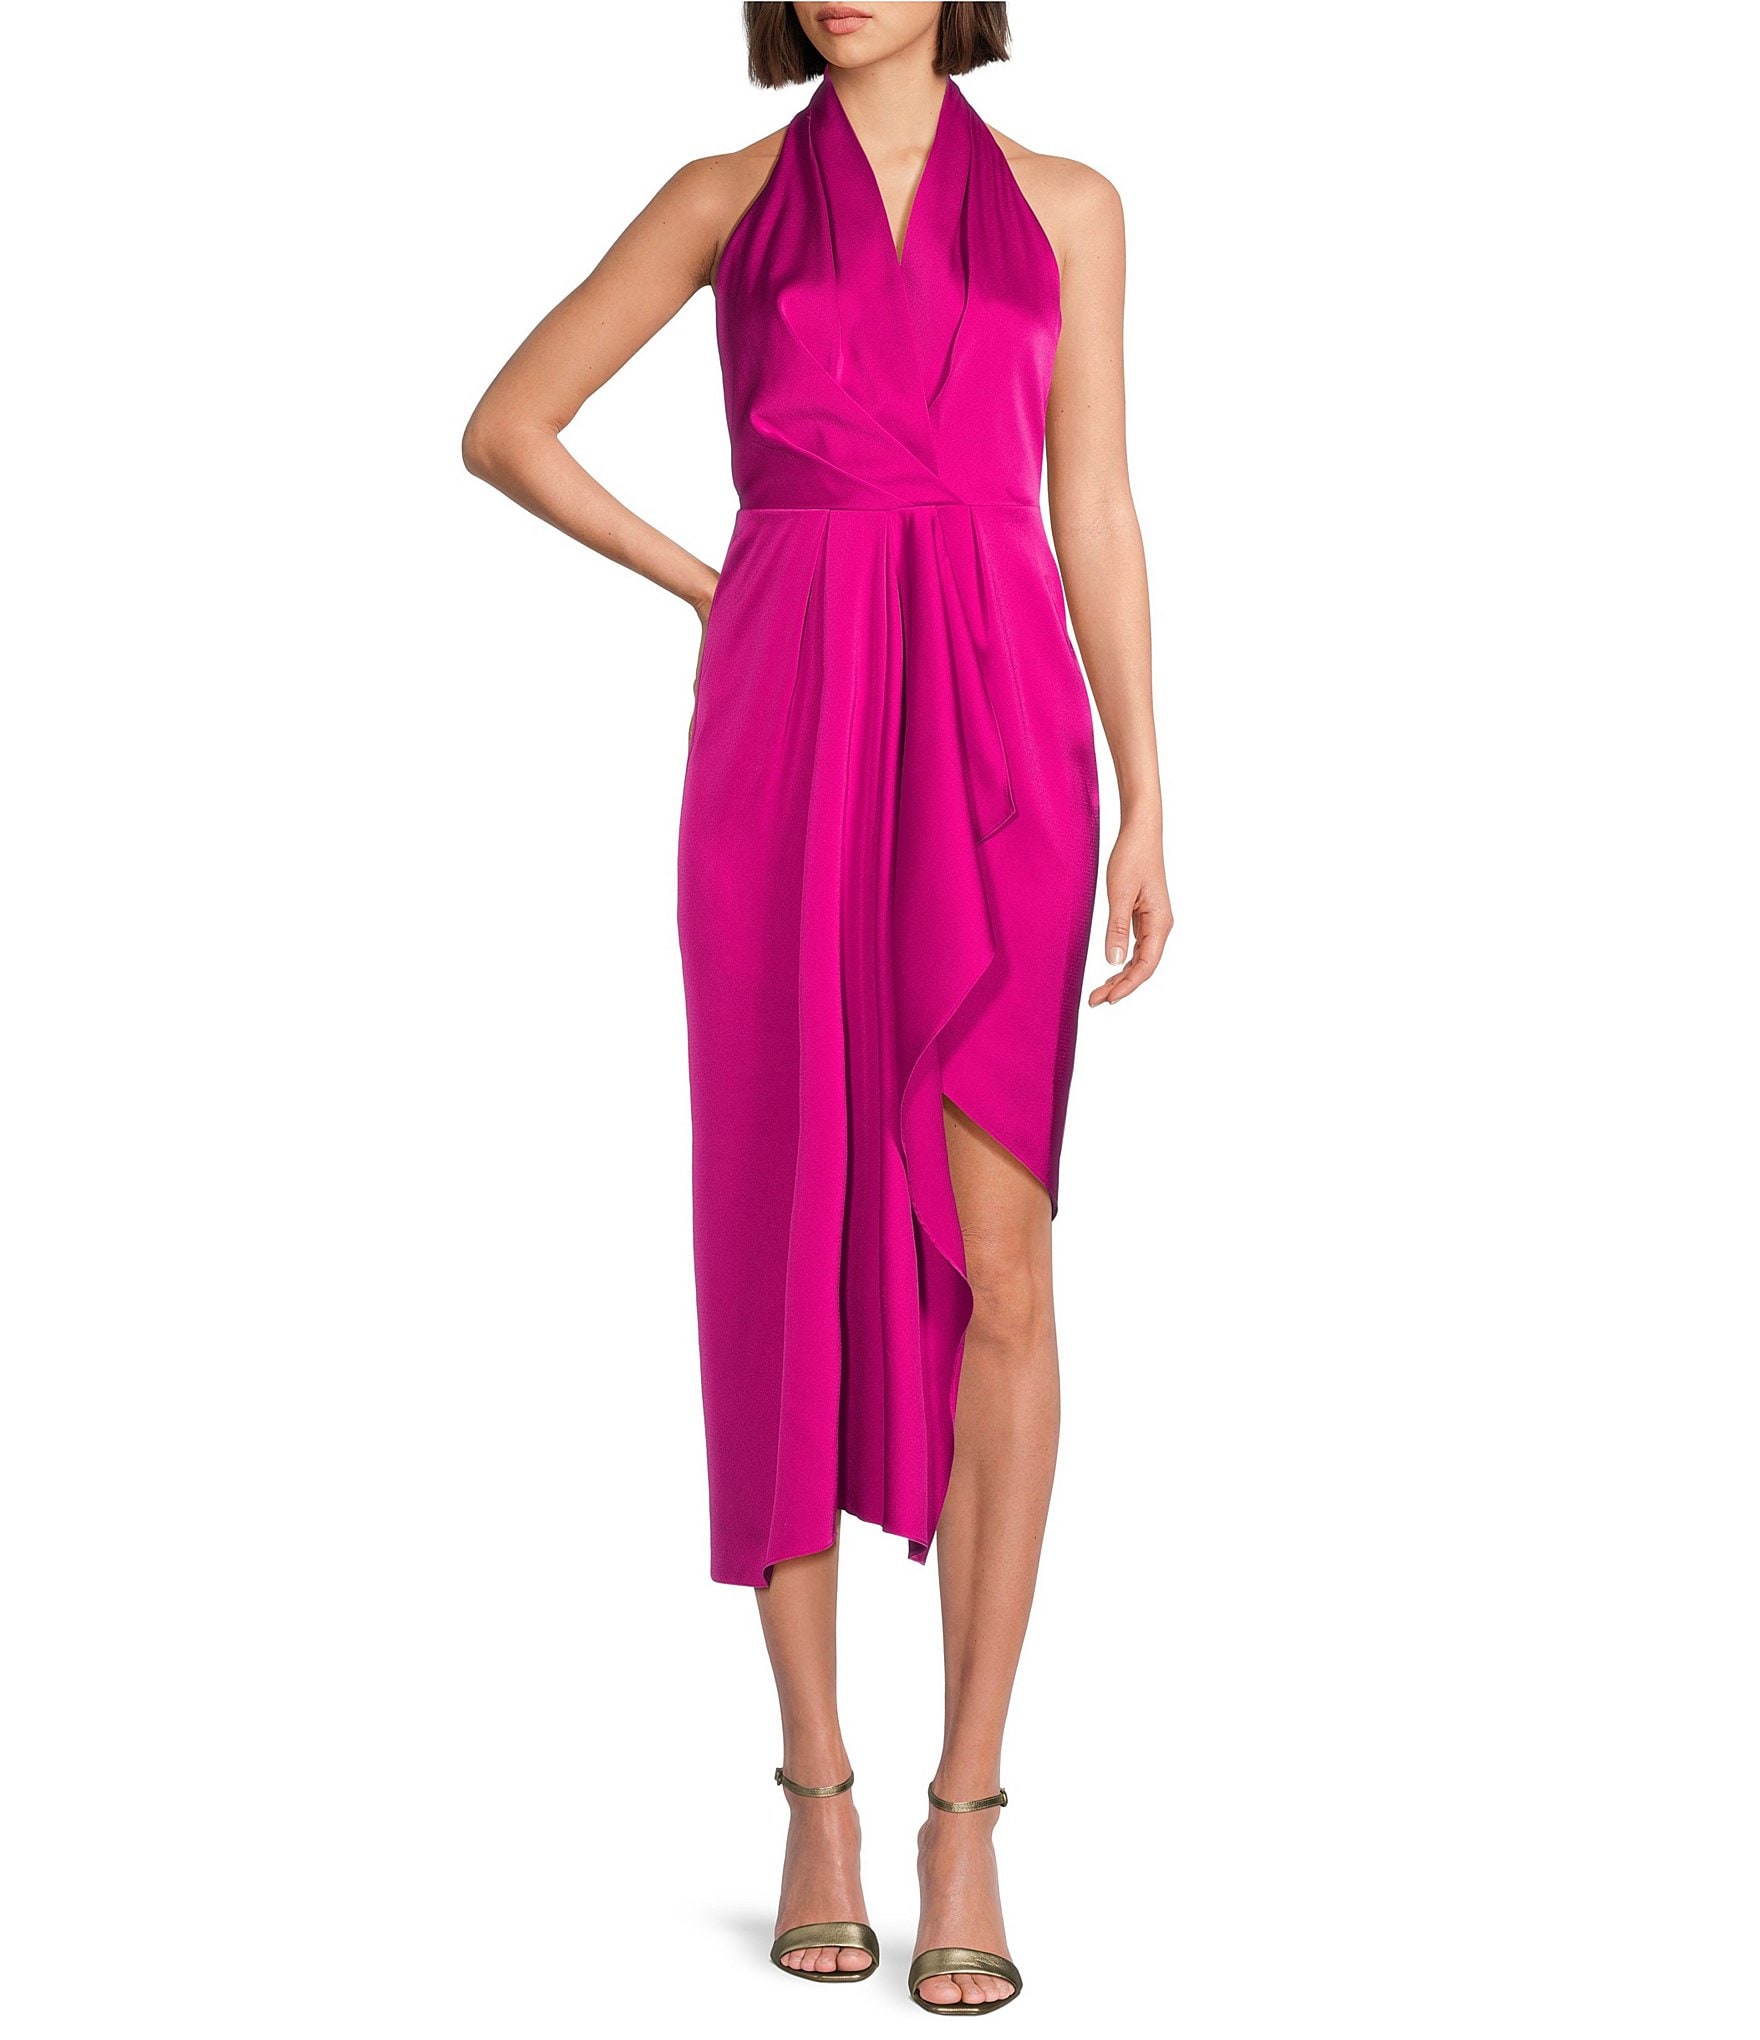 Halter Sling Dress in Honey Pink, Women's Fashion, Dresses & Sets